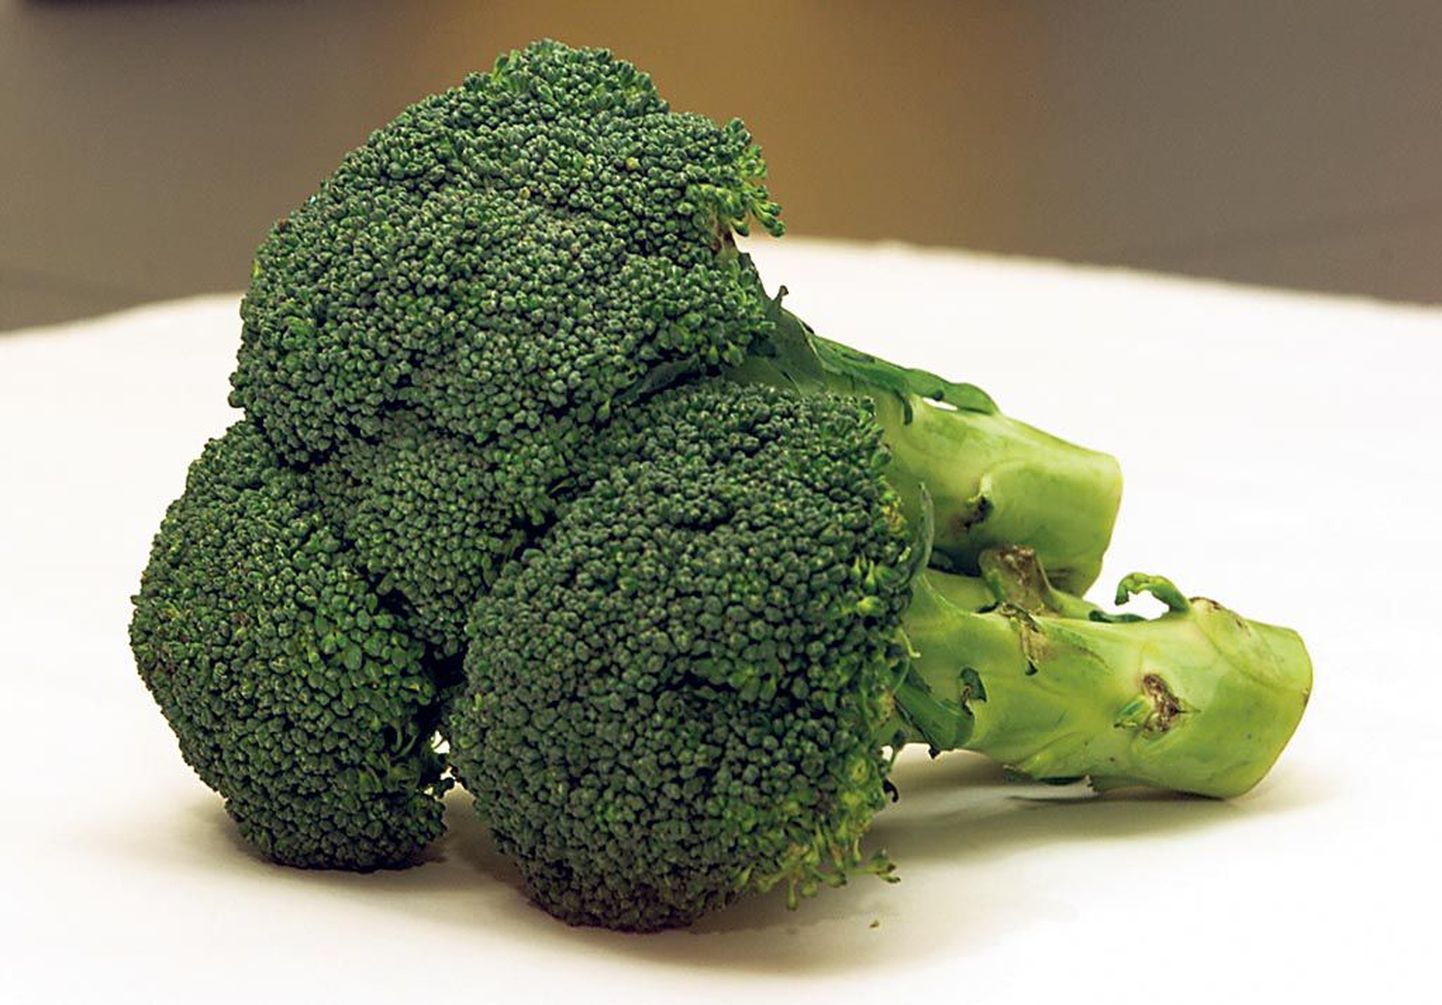 Spargelkapsast ehk brokolit peetakse tervisele väga kasulikuks taimeks.